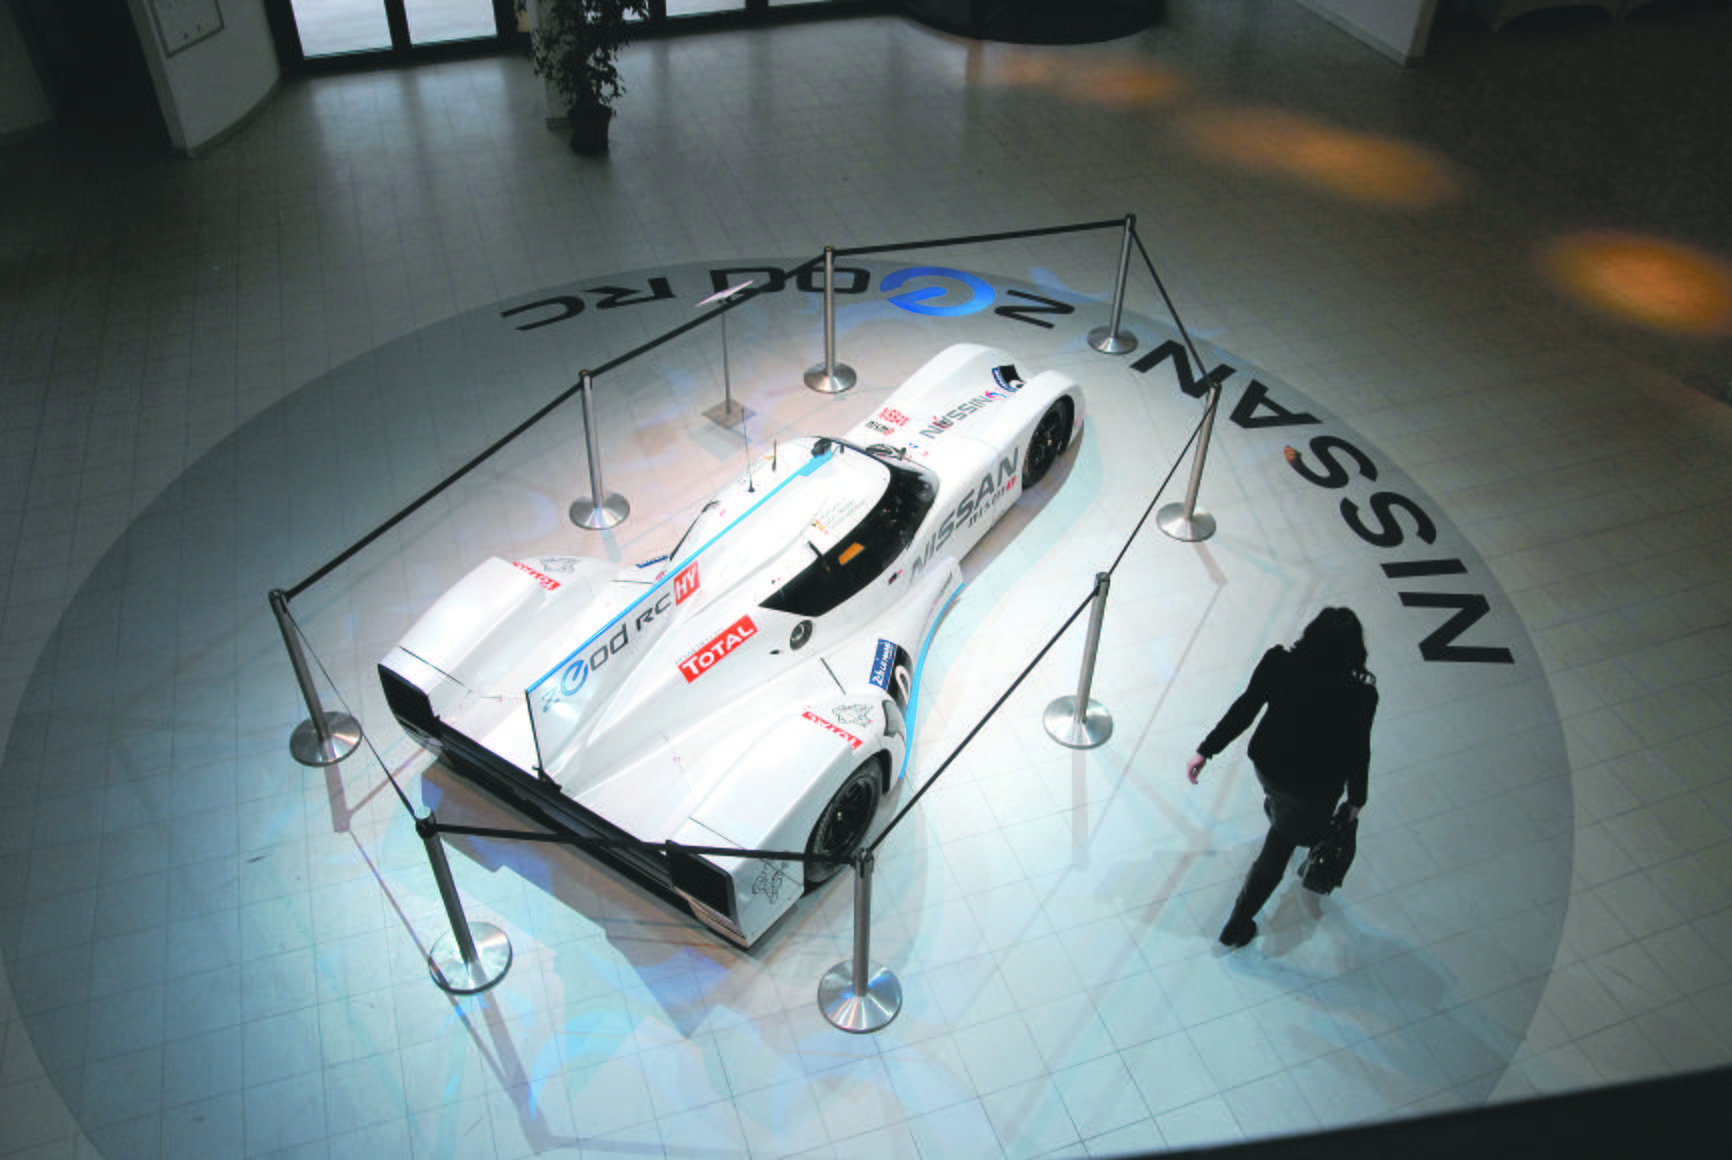 A világ leg- gyorsabb  villanyautója:  Nissan Nismo  300-as  tempóra képes 